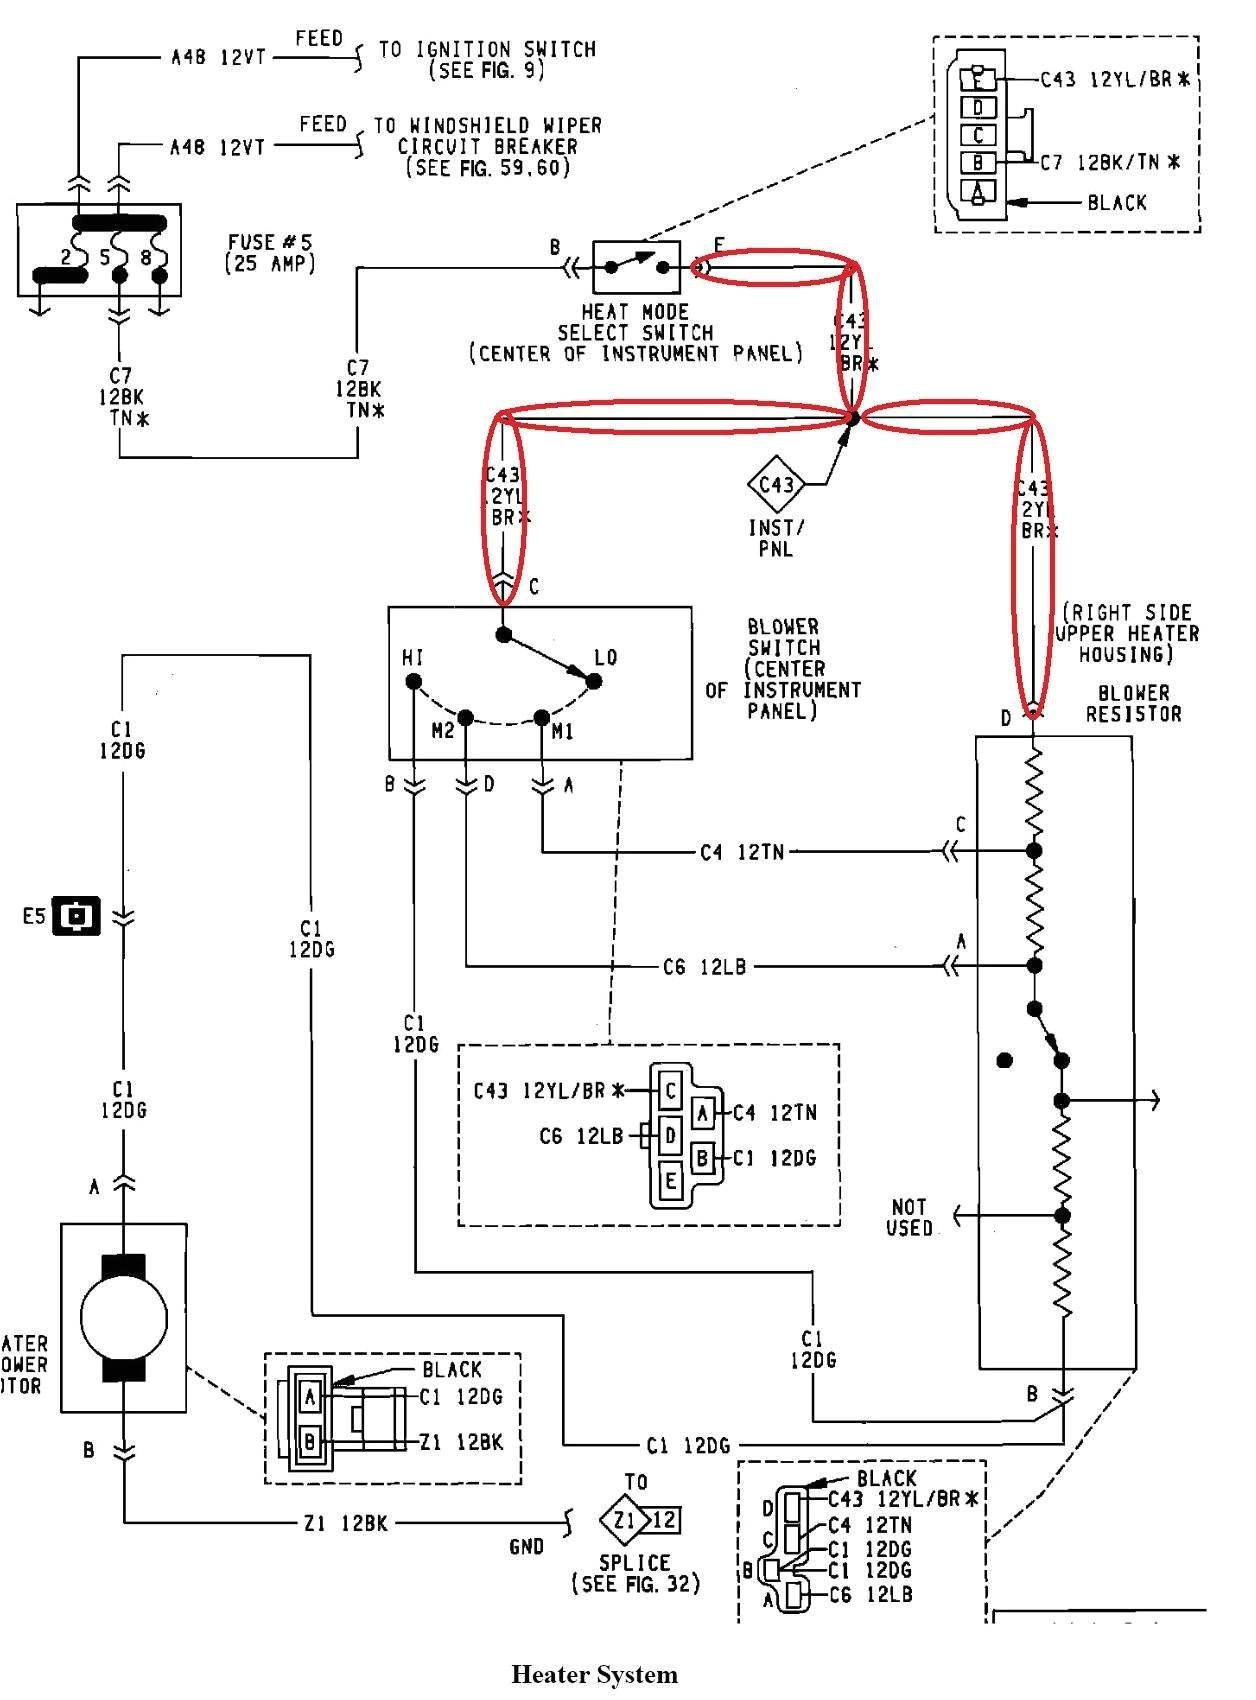 36 volt golf wiring book diagram schema 36 volt golf cart motor wiring diagram 36 volt golf wiring